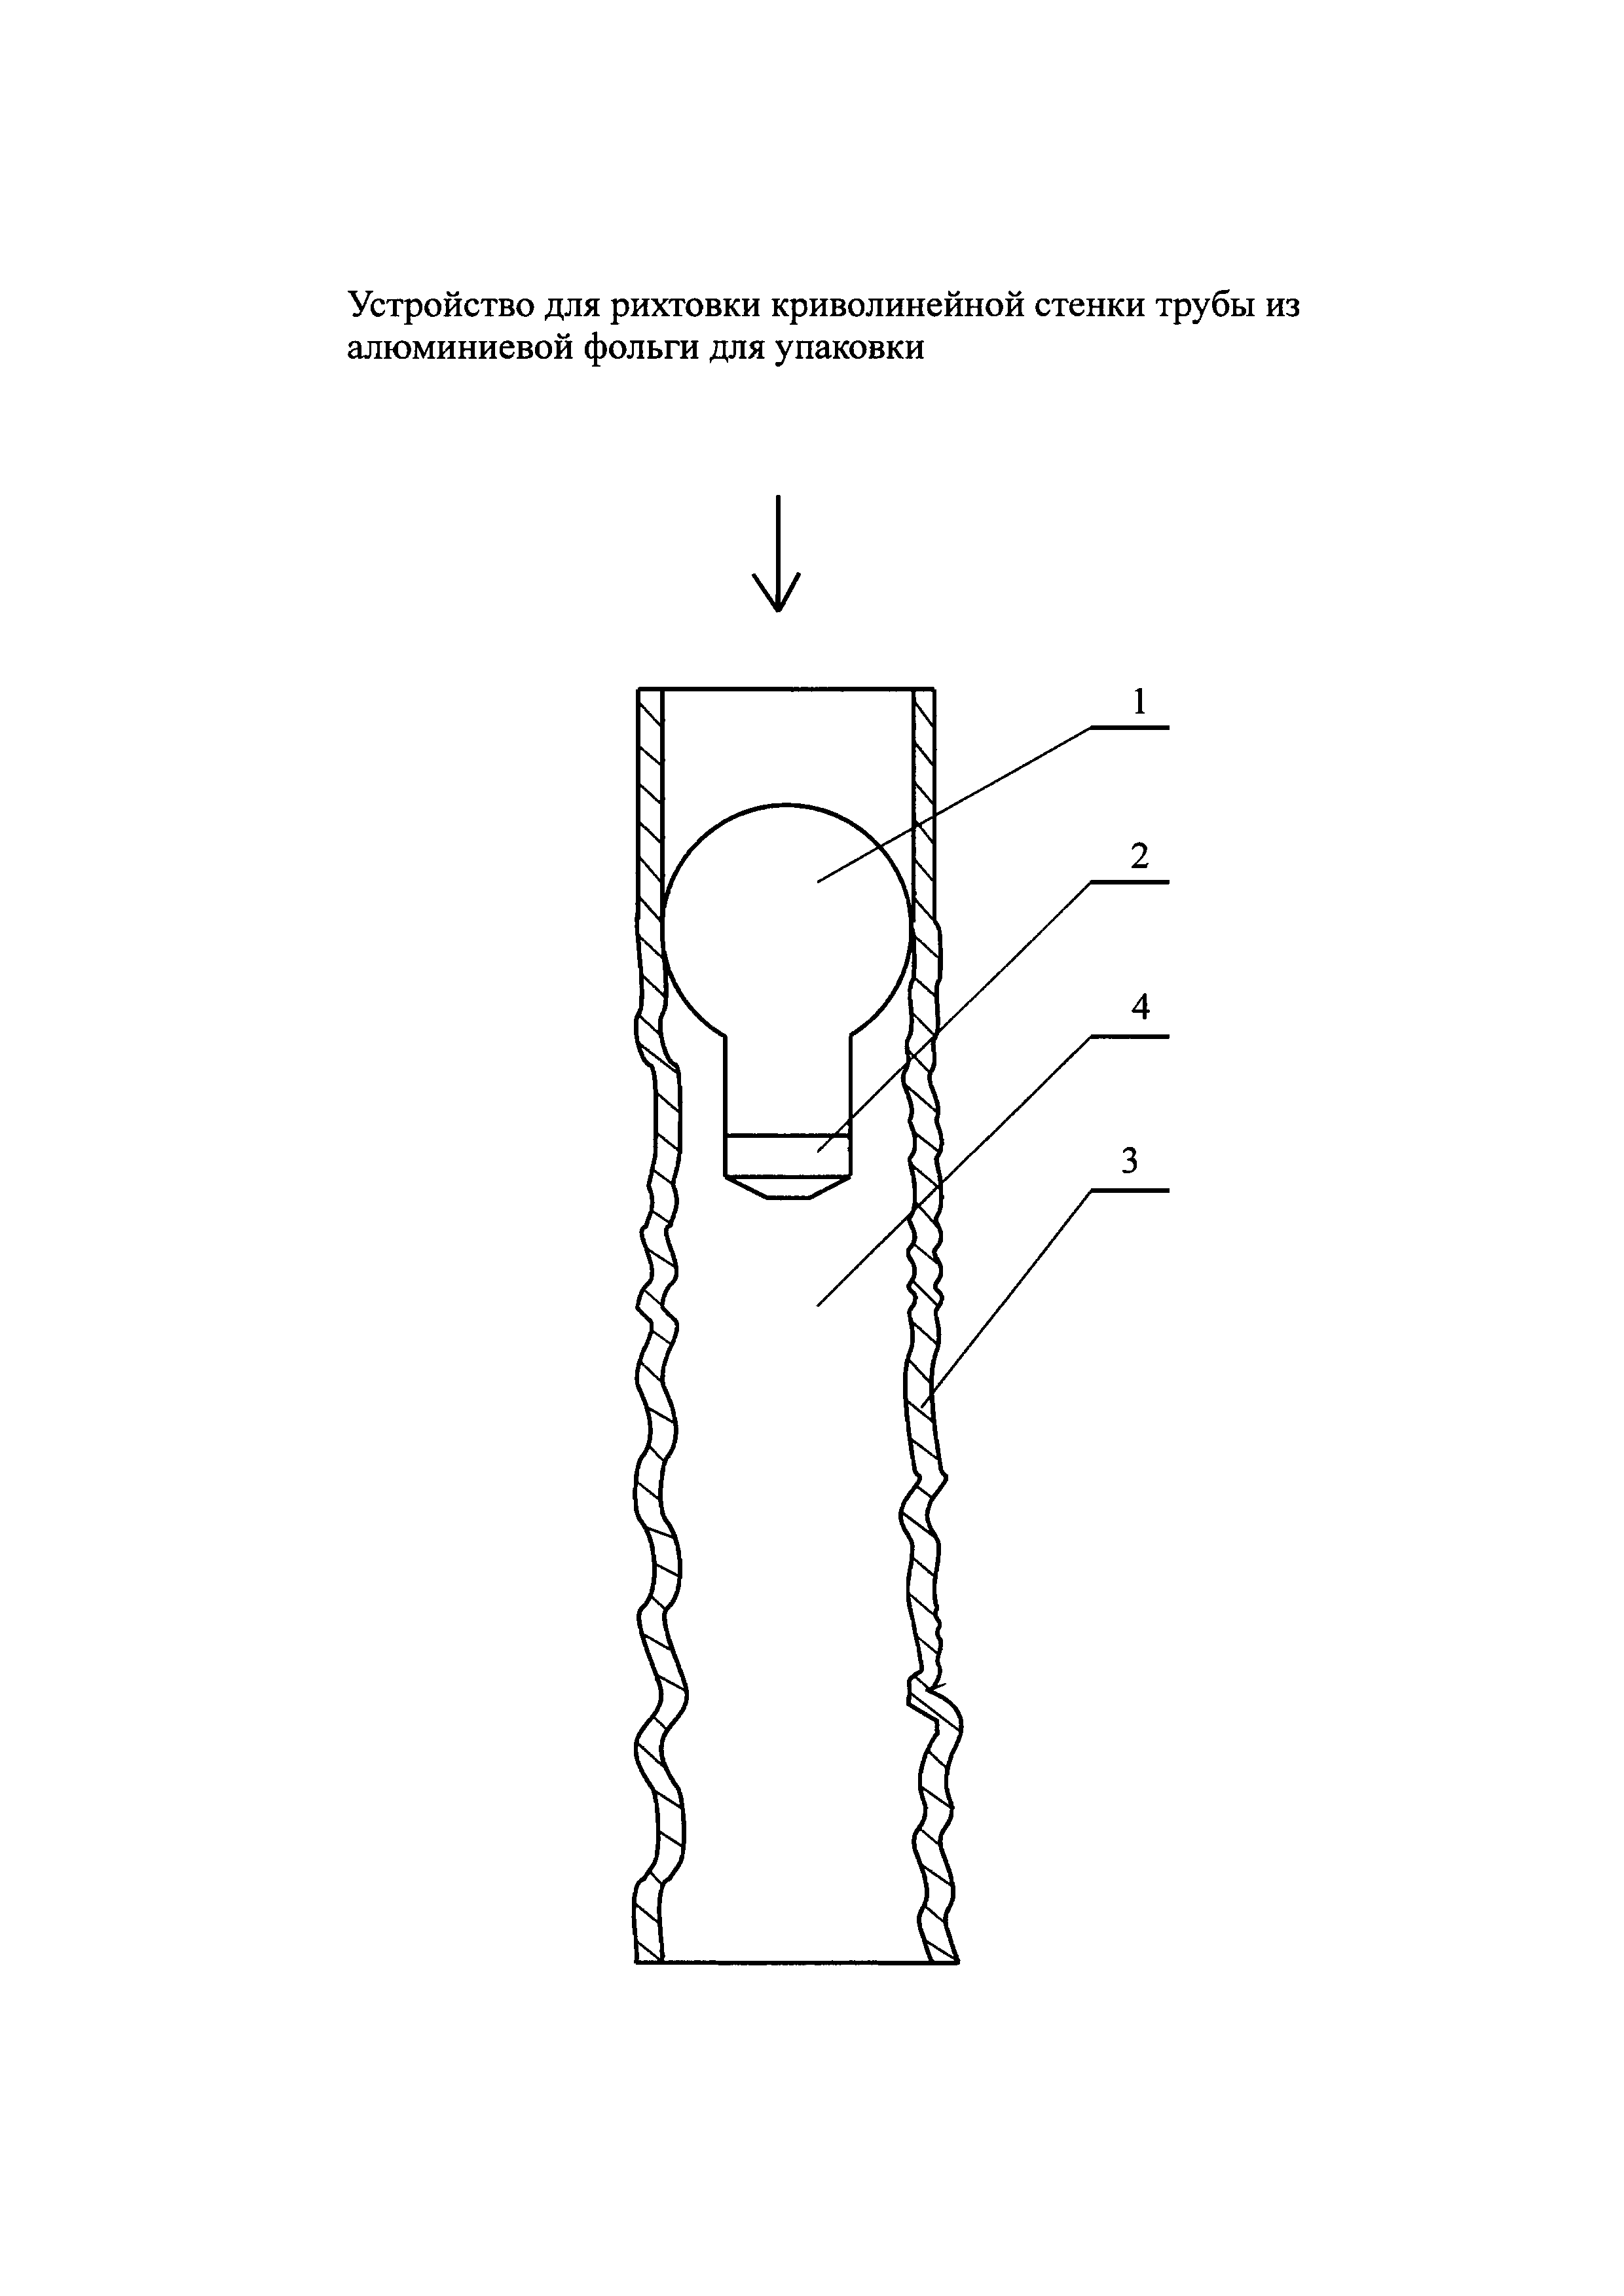 Устройство для рихтовки криволинейной стенки трубы из алюминиевой фольги для упаковки